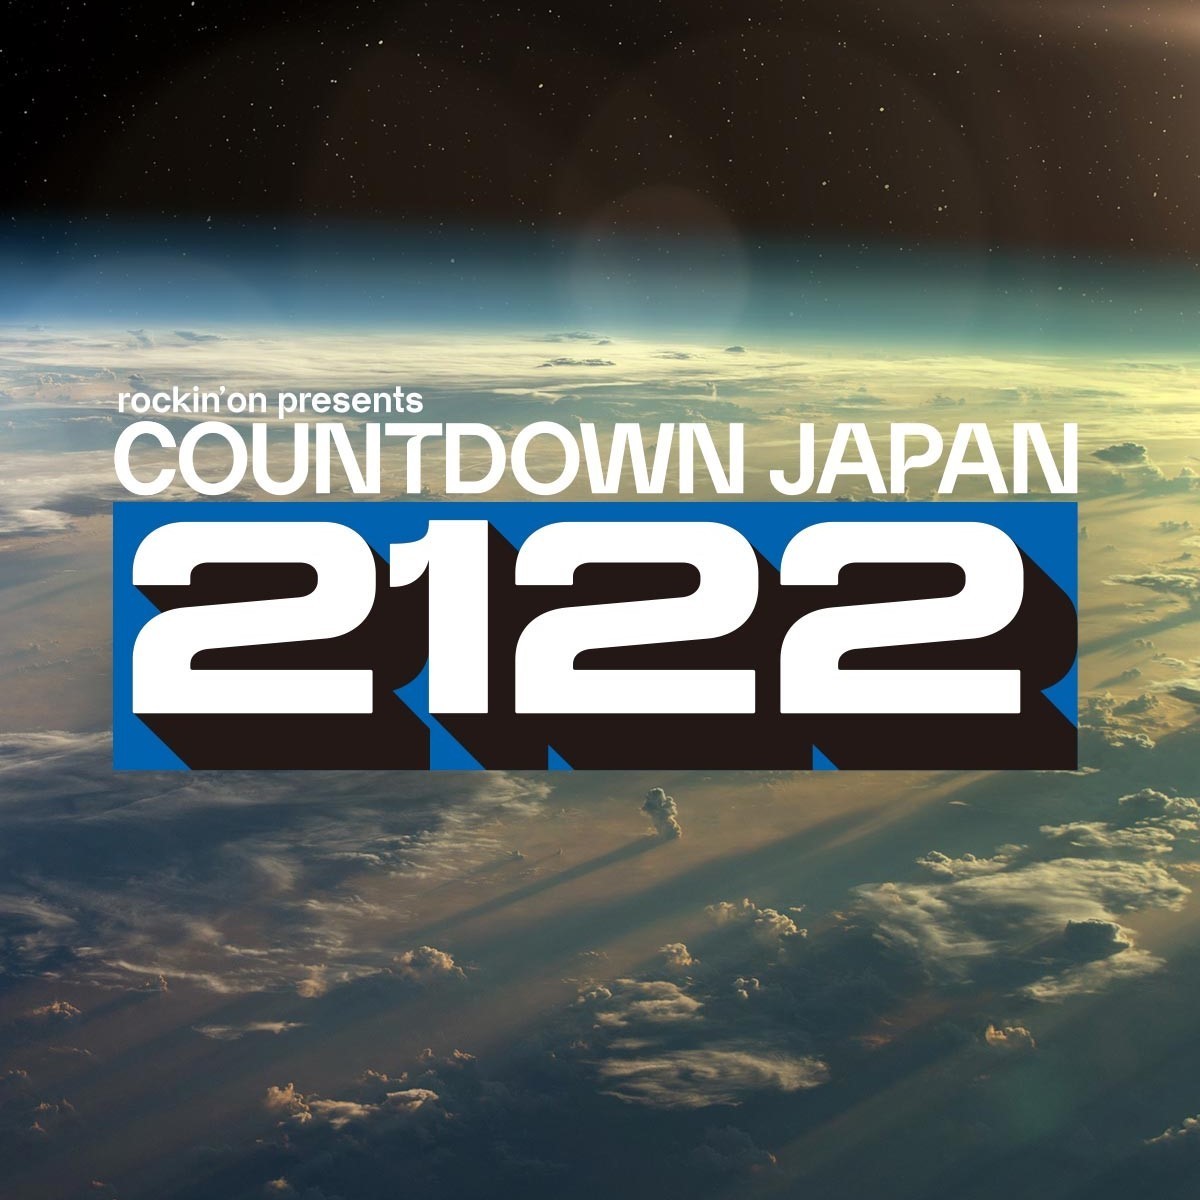 Countdown Japan 21 22 全出演アーティスト発表でユニゾン マンウィズ Bish ずとまよ Sumika ヤバt サウシー キュウソ 打首ら決定